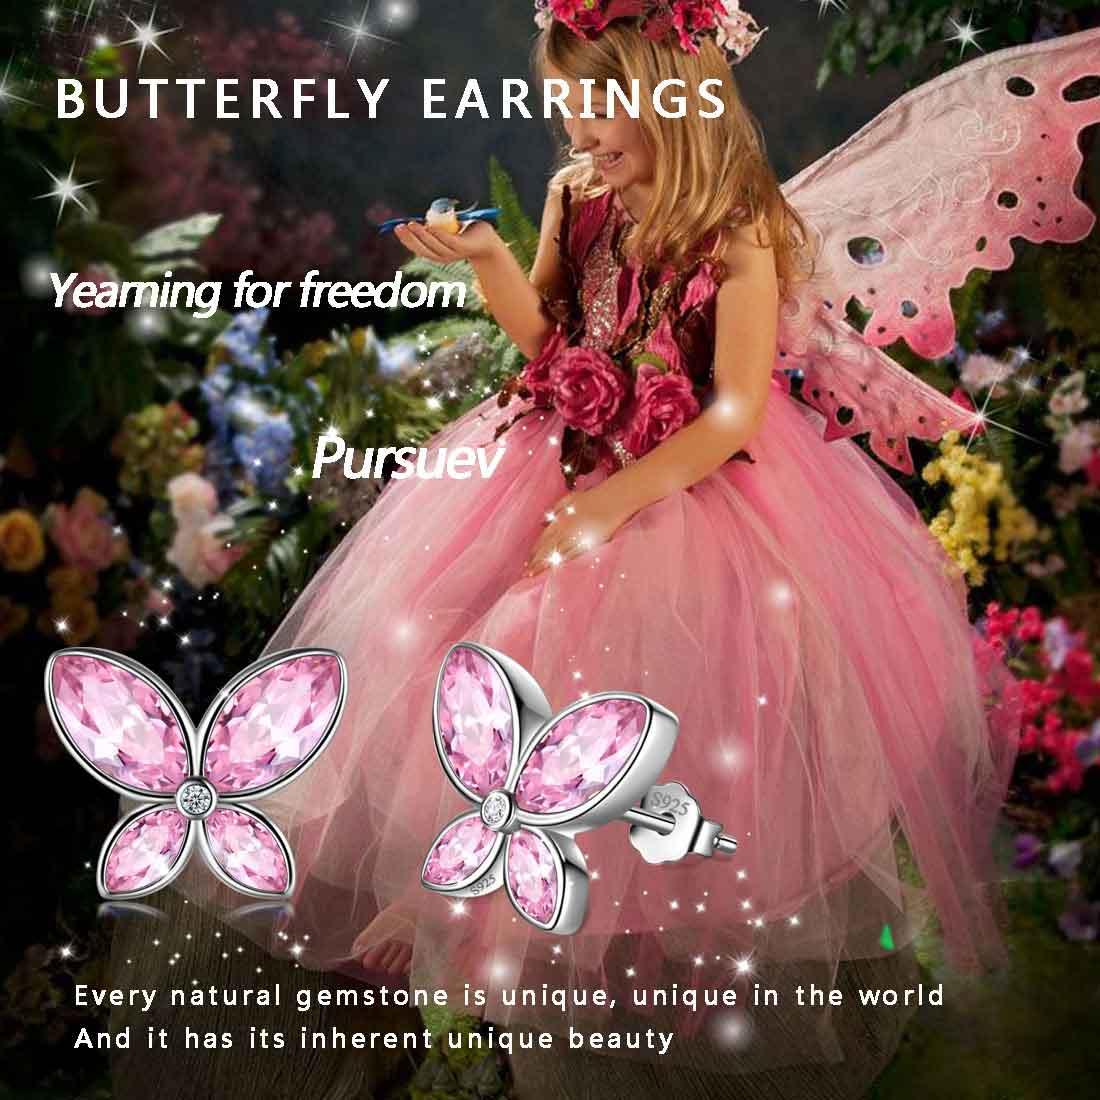 Butterfly Stud Earrings Birthstone October Tourmaline - Earrings - Aurora Tears